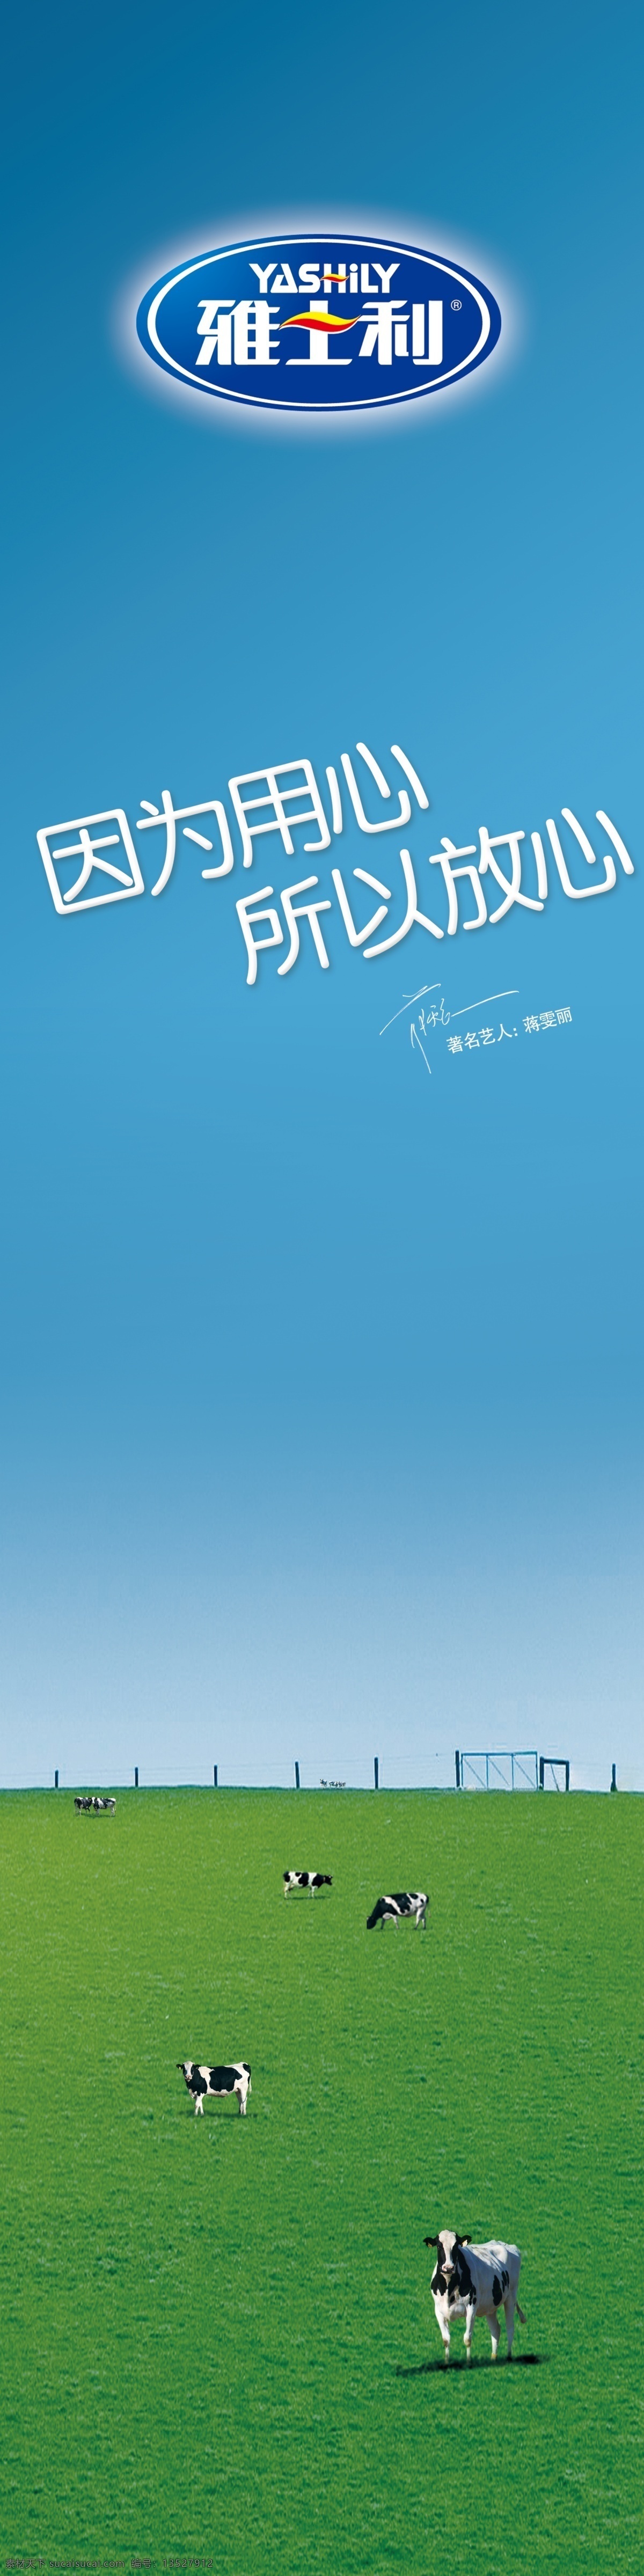 雅士 利 专柜 竖 版 海拔 最新 雅士利标志 蓝天 草原 奶牛 广告设计模板 源文件